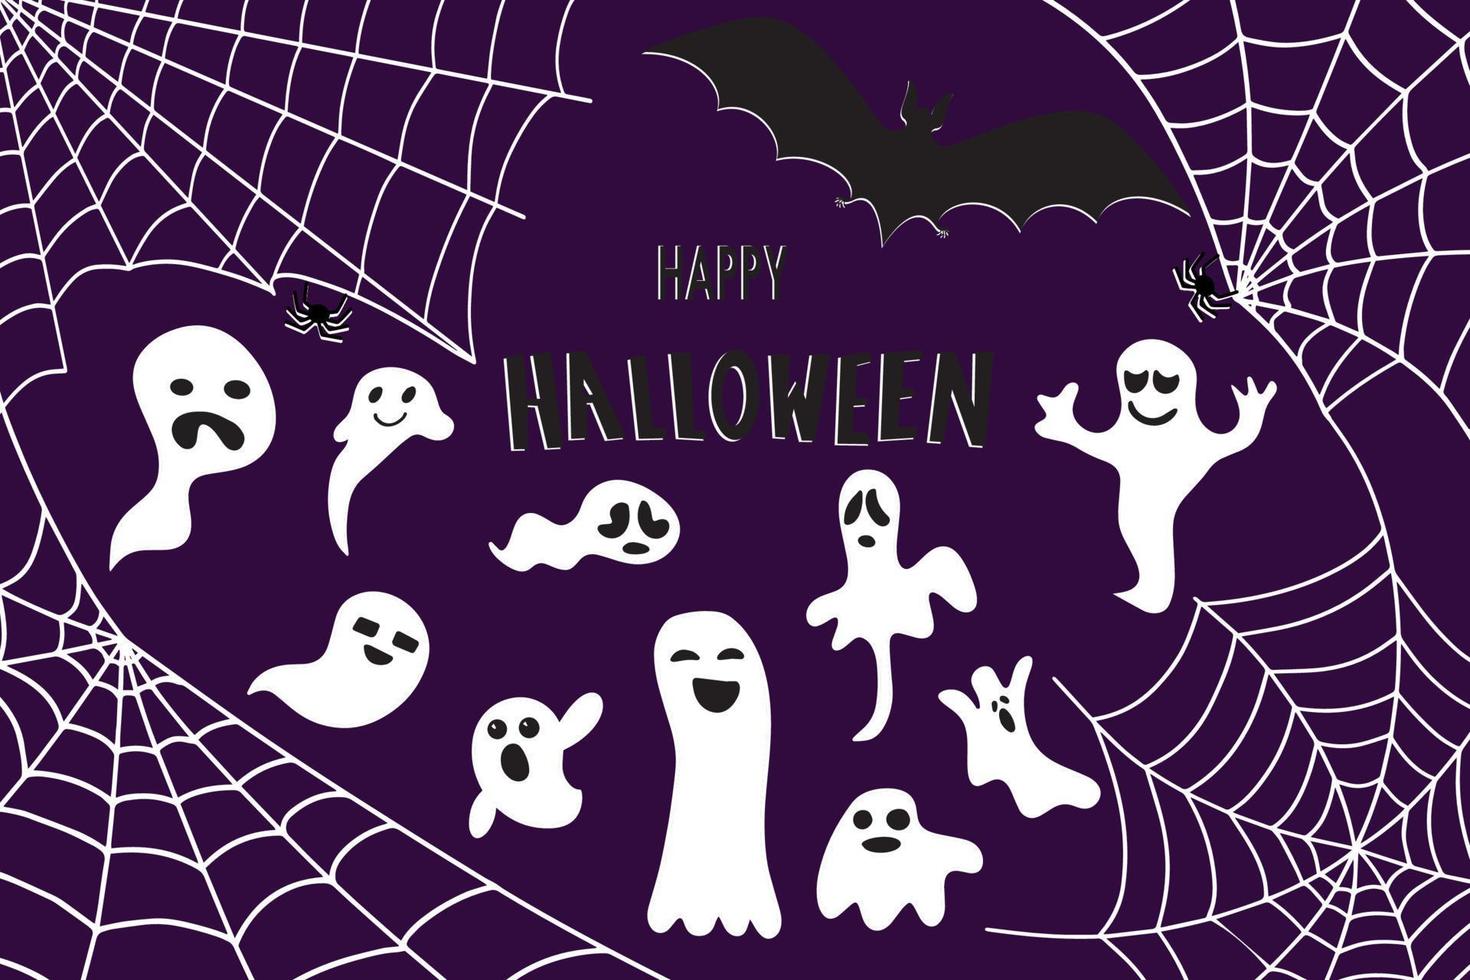 murciélago, web y fantasmas. fondo de halloween vector